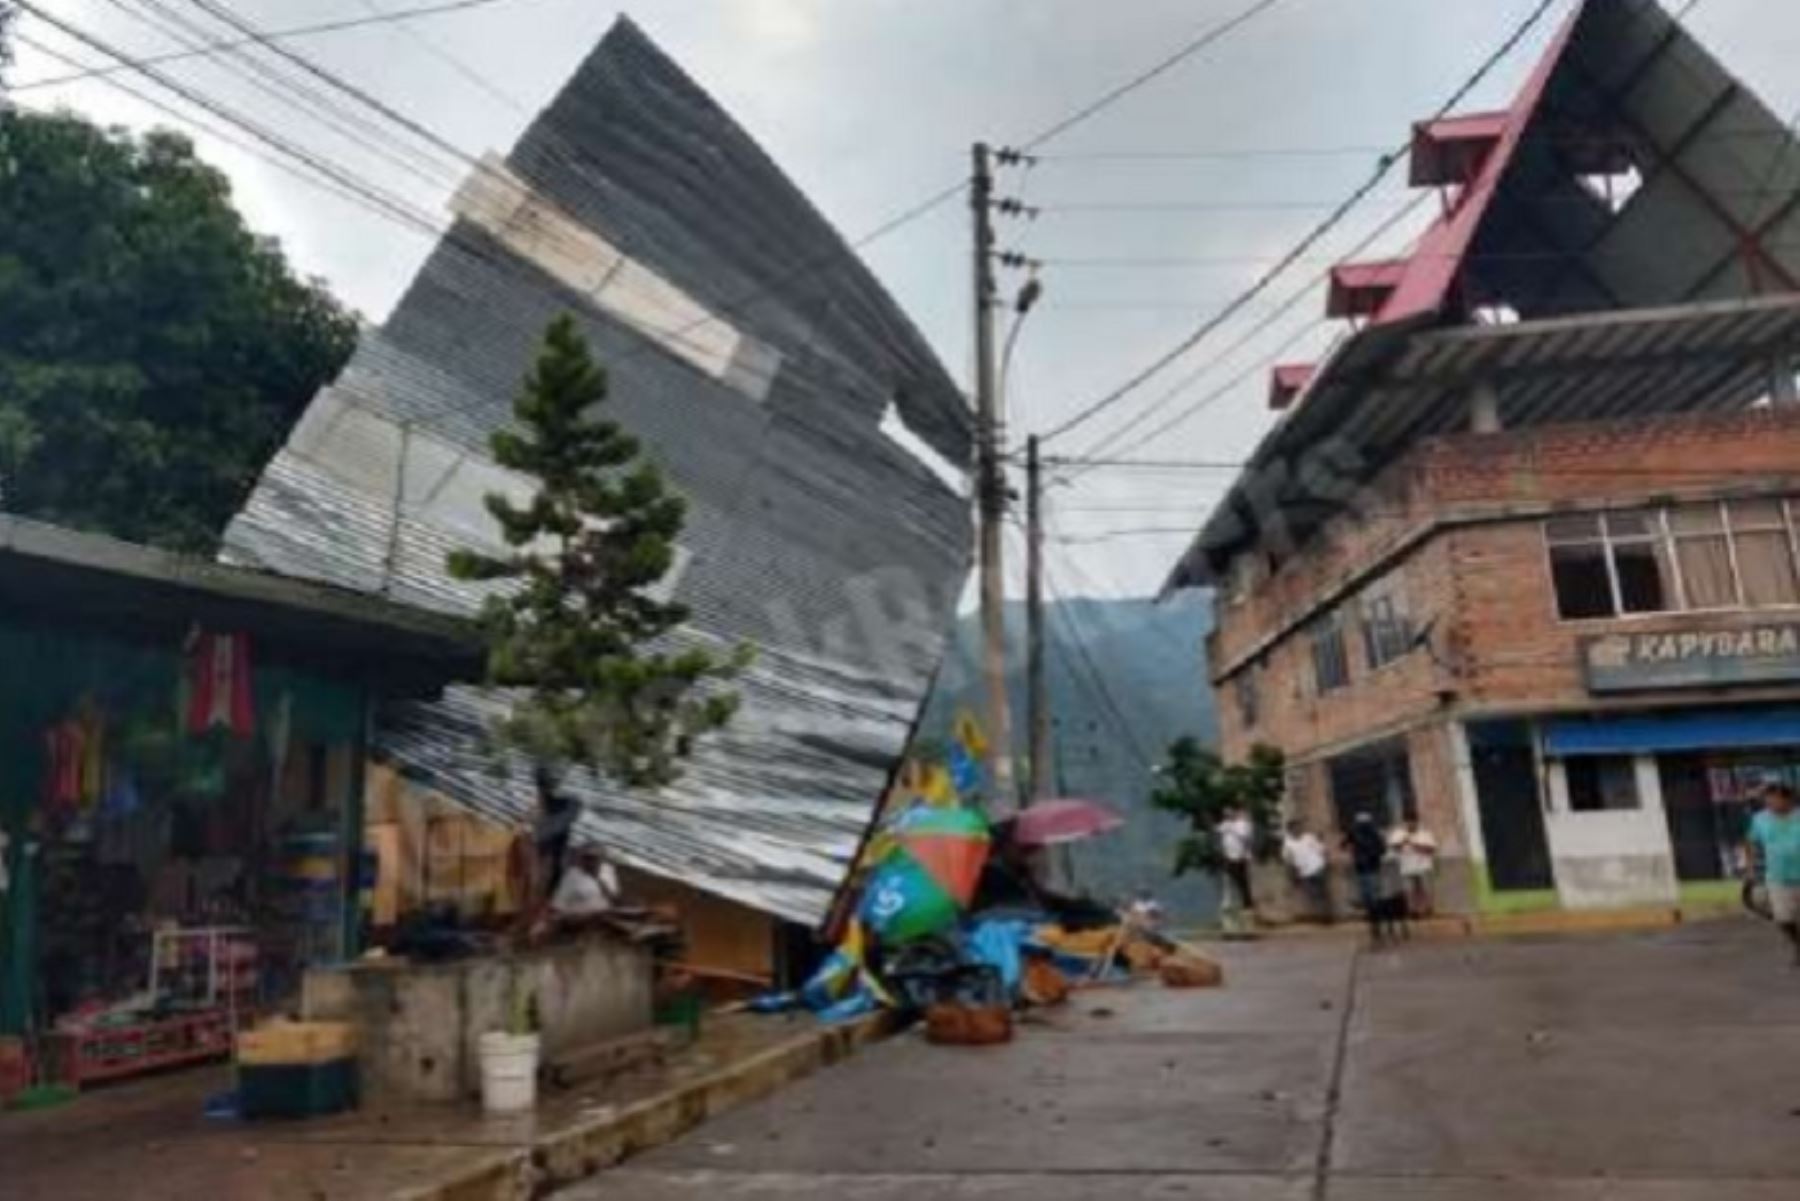 Esta tarde se registraron vientos fuertes acompañados de lluvias y granizadas en los distritos de Chanchamayo y San Ramón, de la provincia de Chanchamayo, región Junín, que ocasionaron voladura de techos de calamina y dejaron un herido, precisó el Instituto Nacional de Defensa Civil (Indeci).